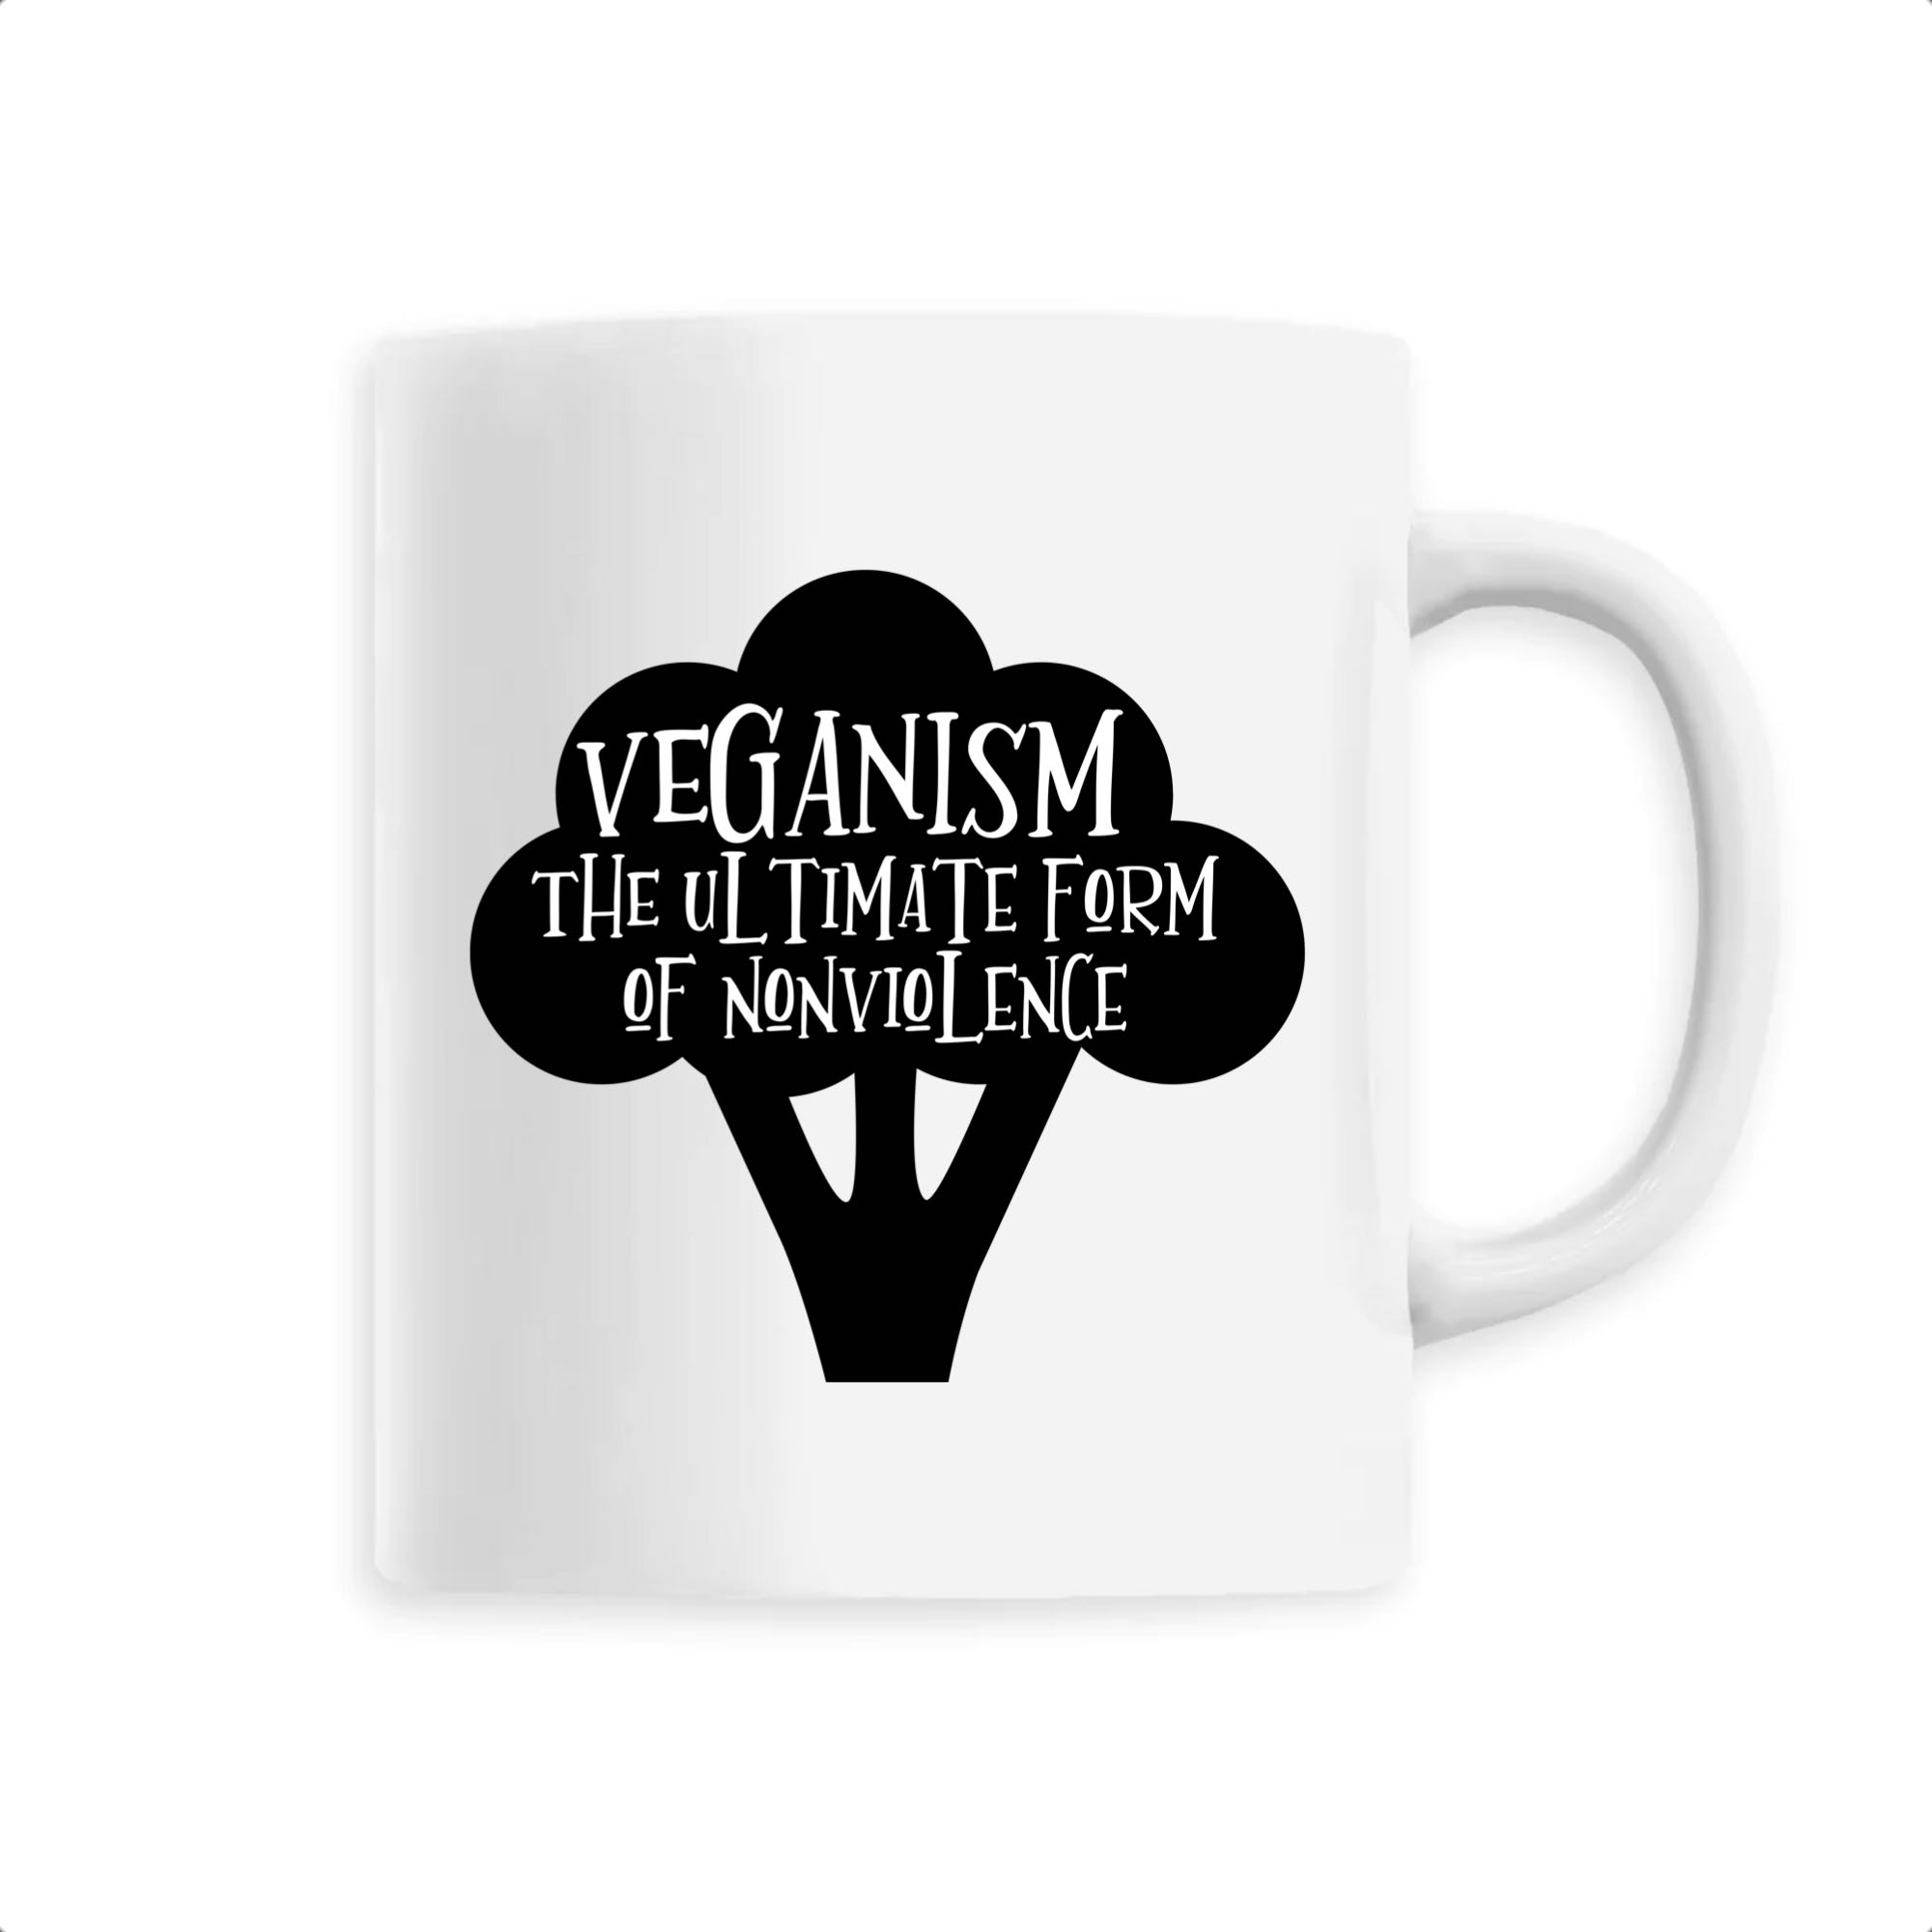 Veganism: The ultimate form of nonviolence (Le véganisme est la forme ultime de non-violence) Mug